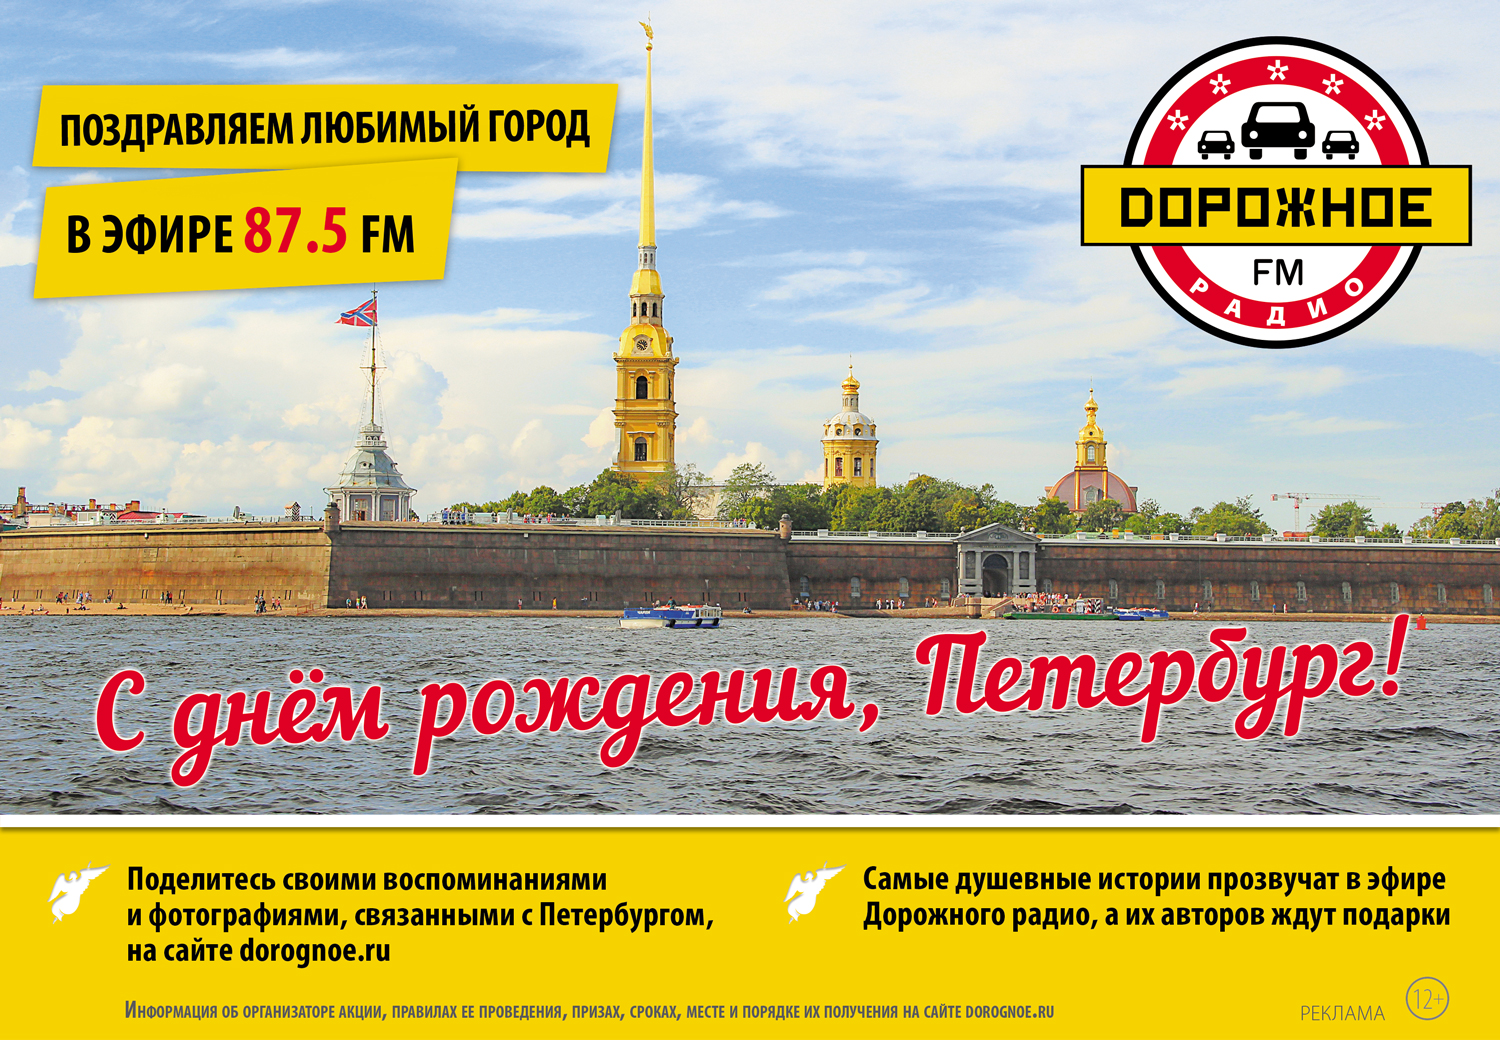 Я люблю Петербург!